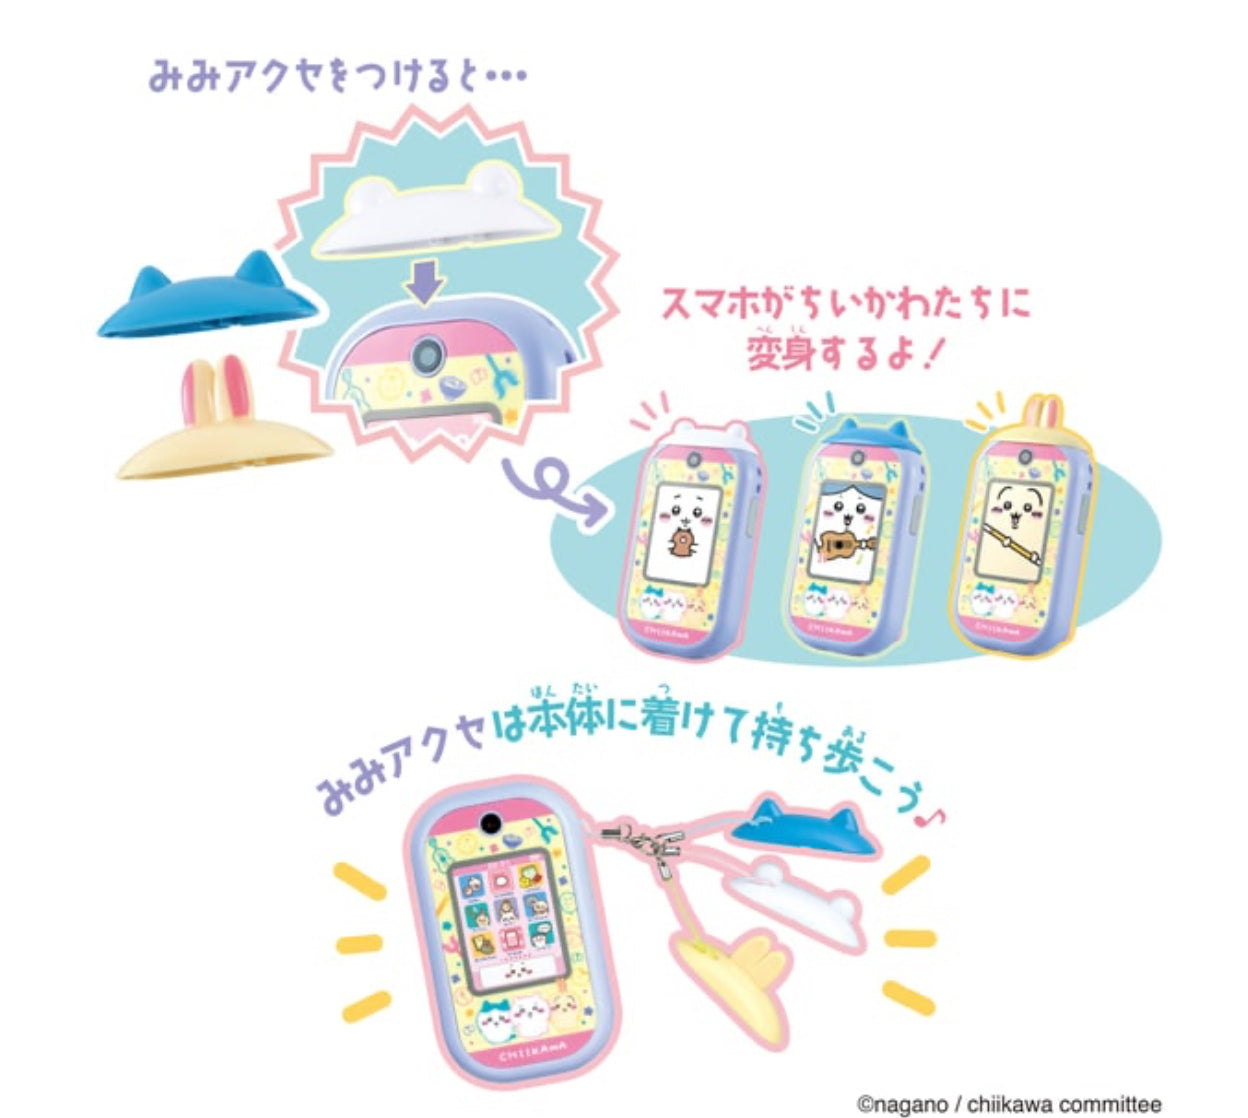 限時優惠 Chiikawa 吉伊卡哇 玩具電話 智慧型手機玩具 配備57應用程序 8月到貨 ちいかわ Chiikawa Phone